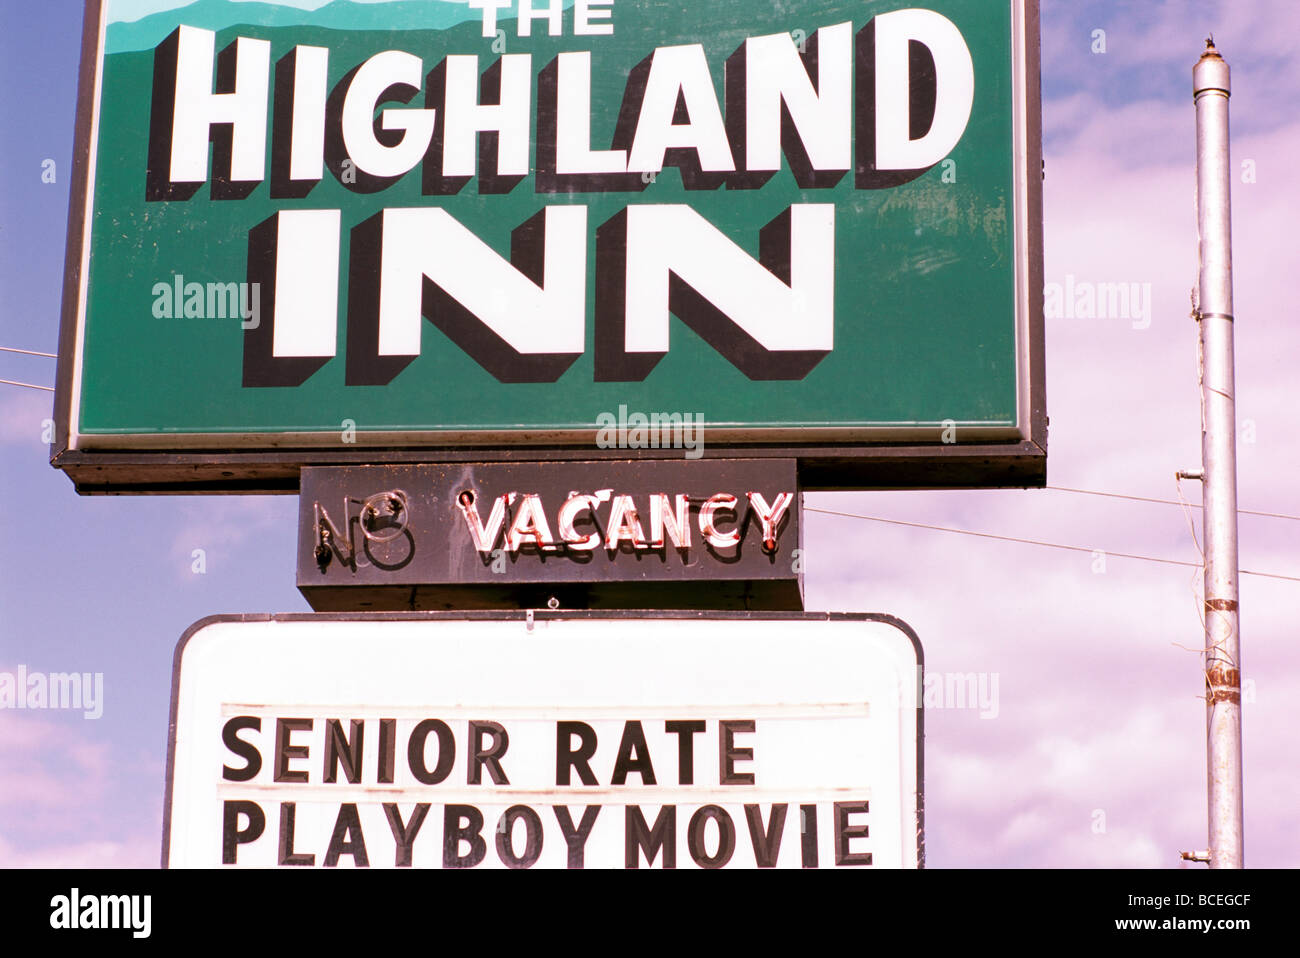 Hotel / Motel / Inn Informazioni registrazione - vacante, Tariffa Senior, Playboy filmato Foto Stock